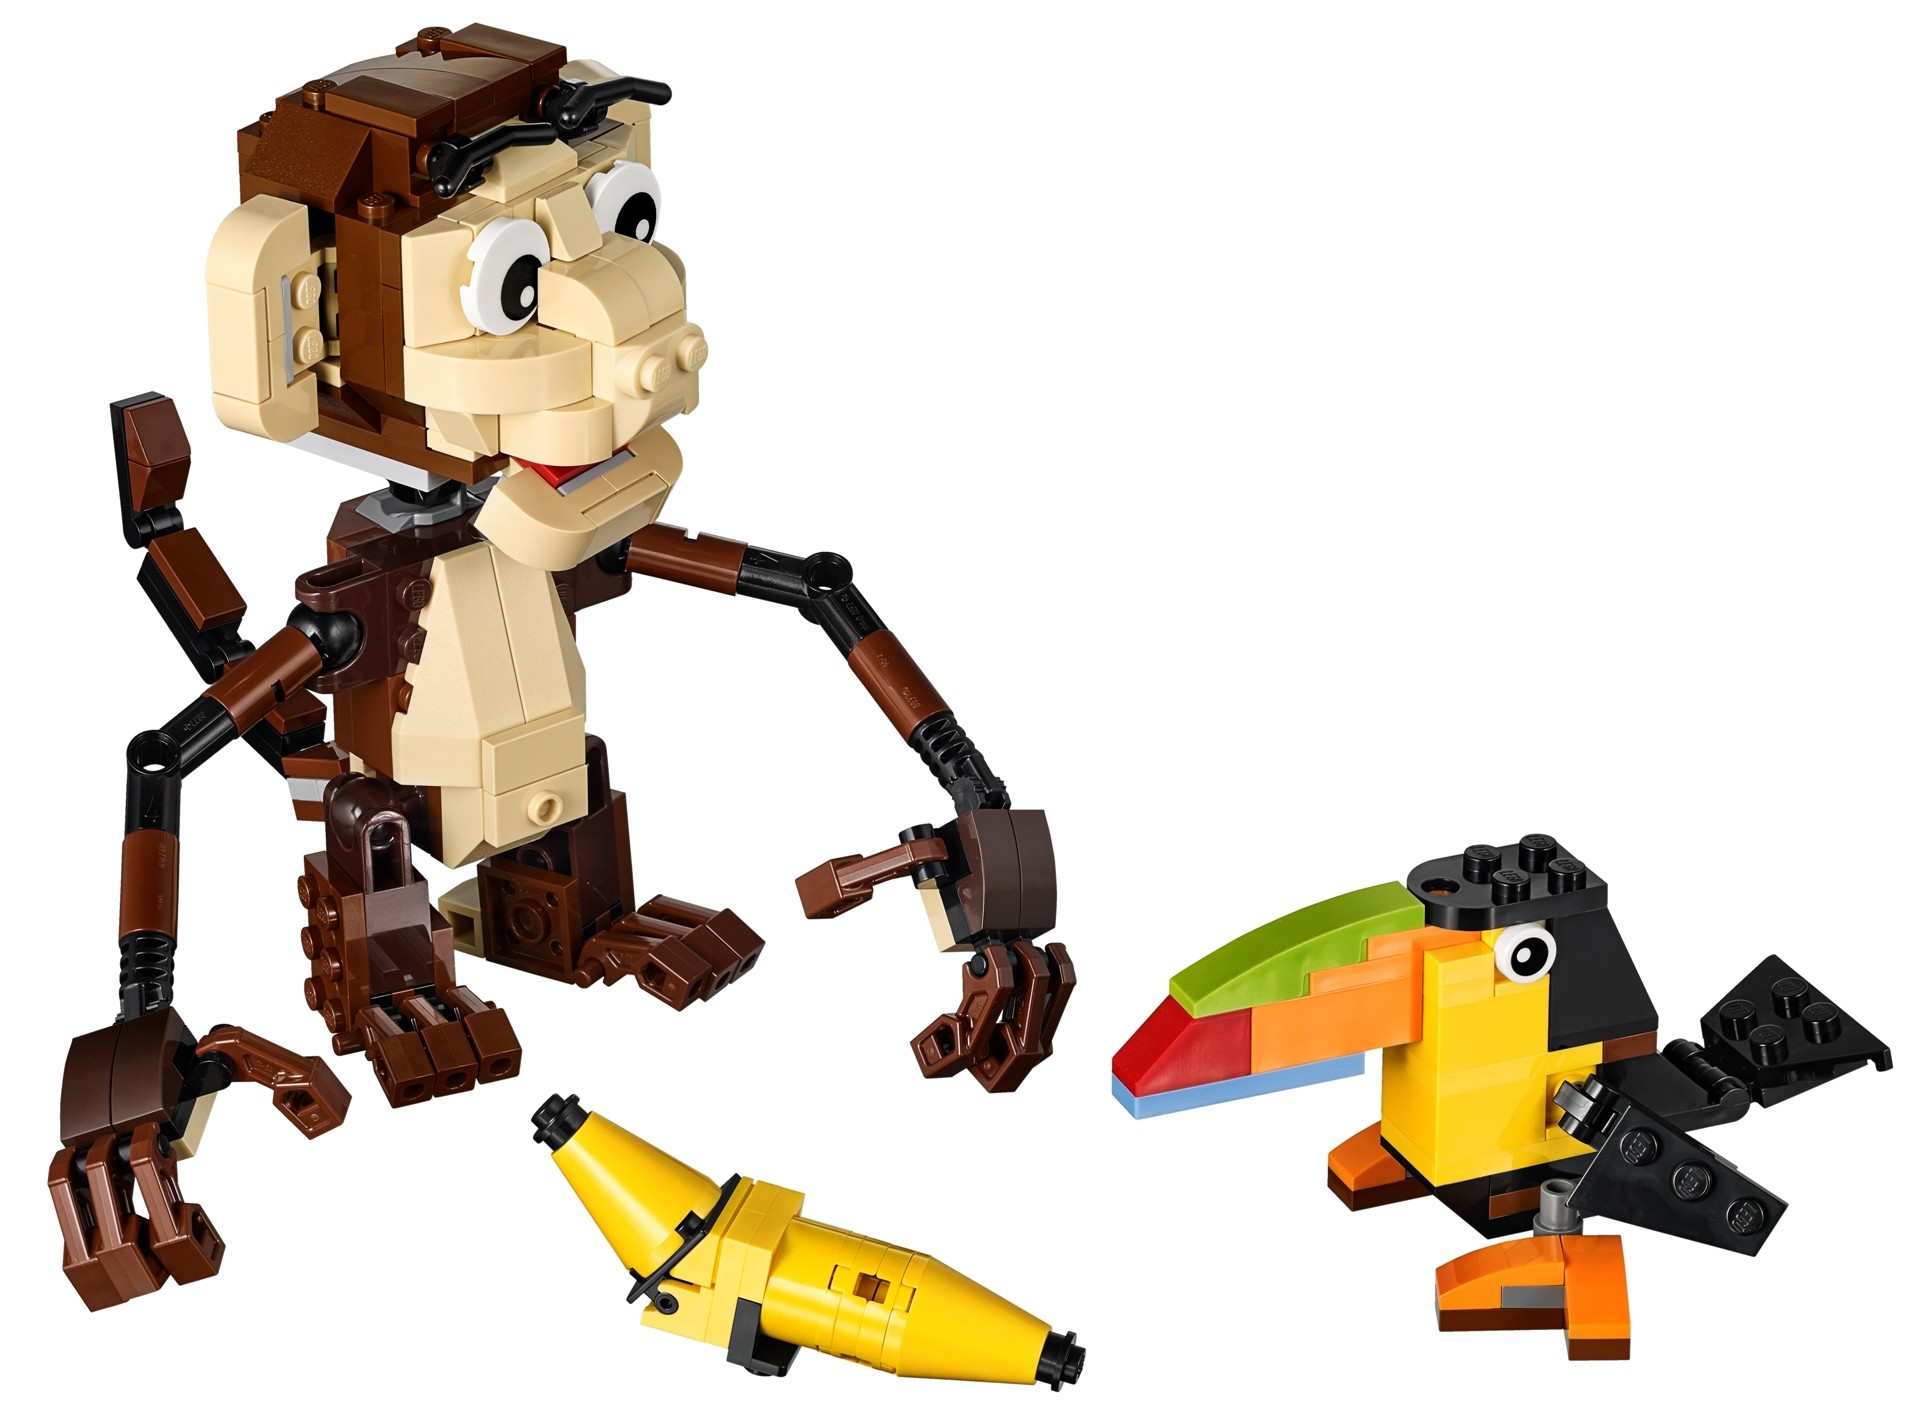 【五十川芳仁】WeDo猴子-乐高WeDo WeDo Monkey - LEGO WeDo_哔哩哔哩 (゜-゜)つロ 干杯~-bilibili